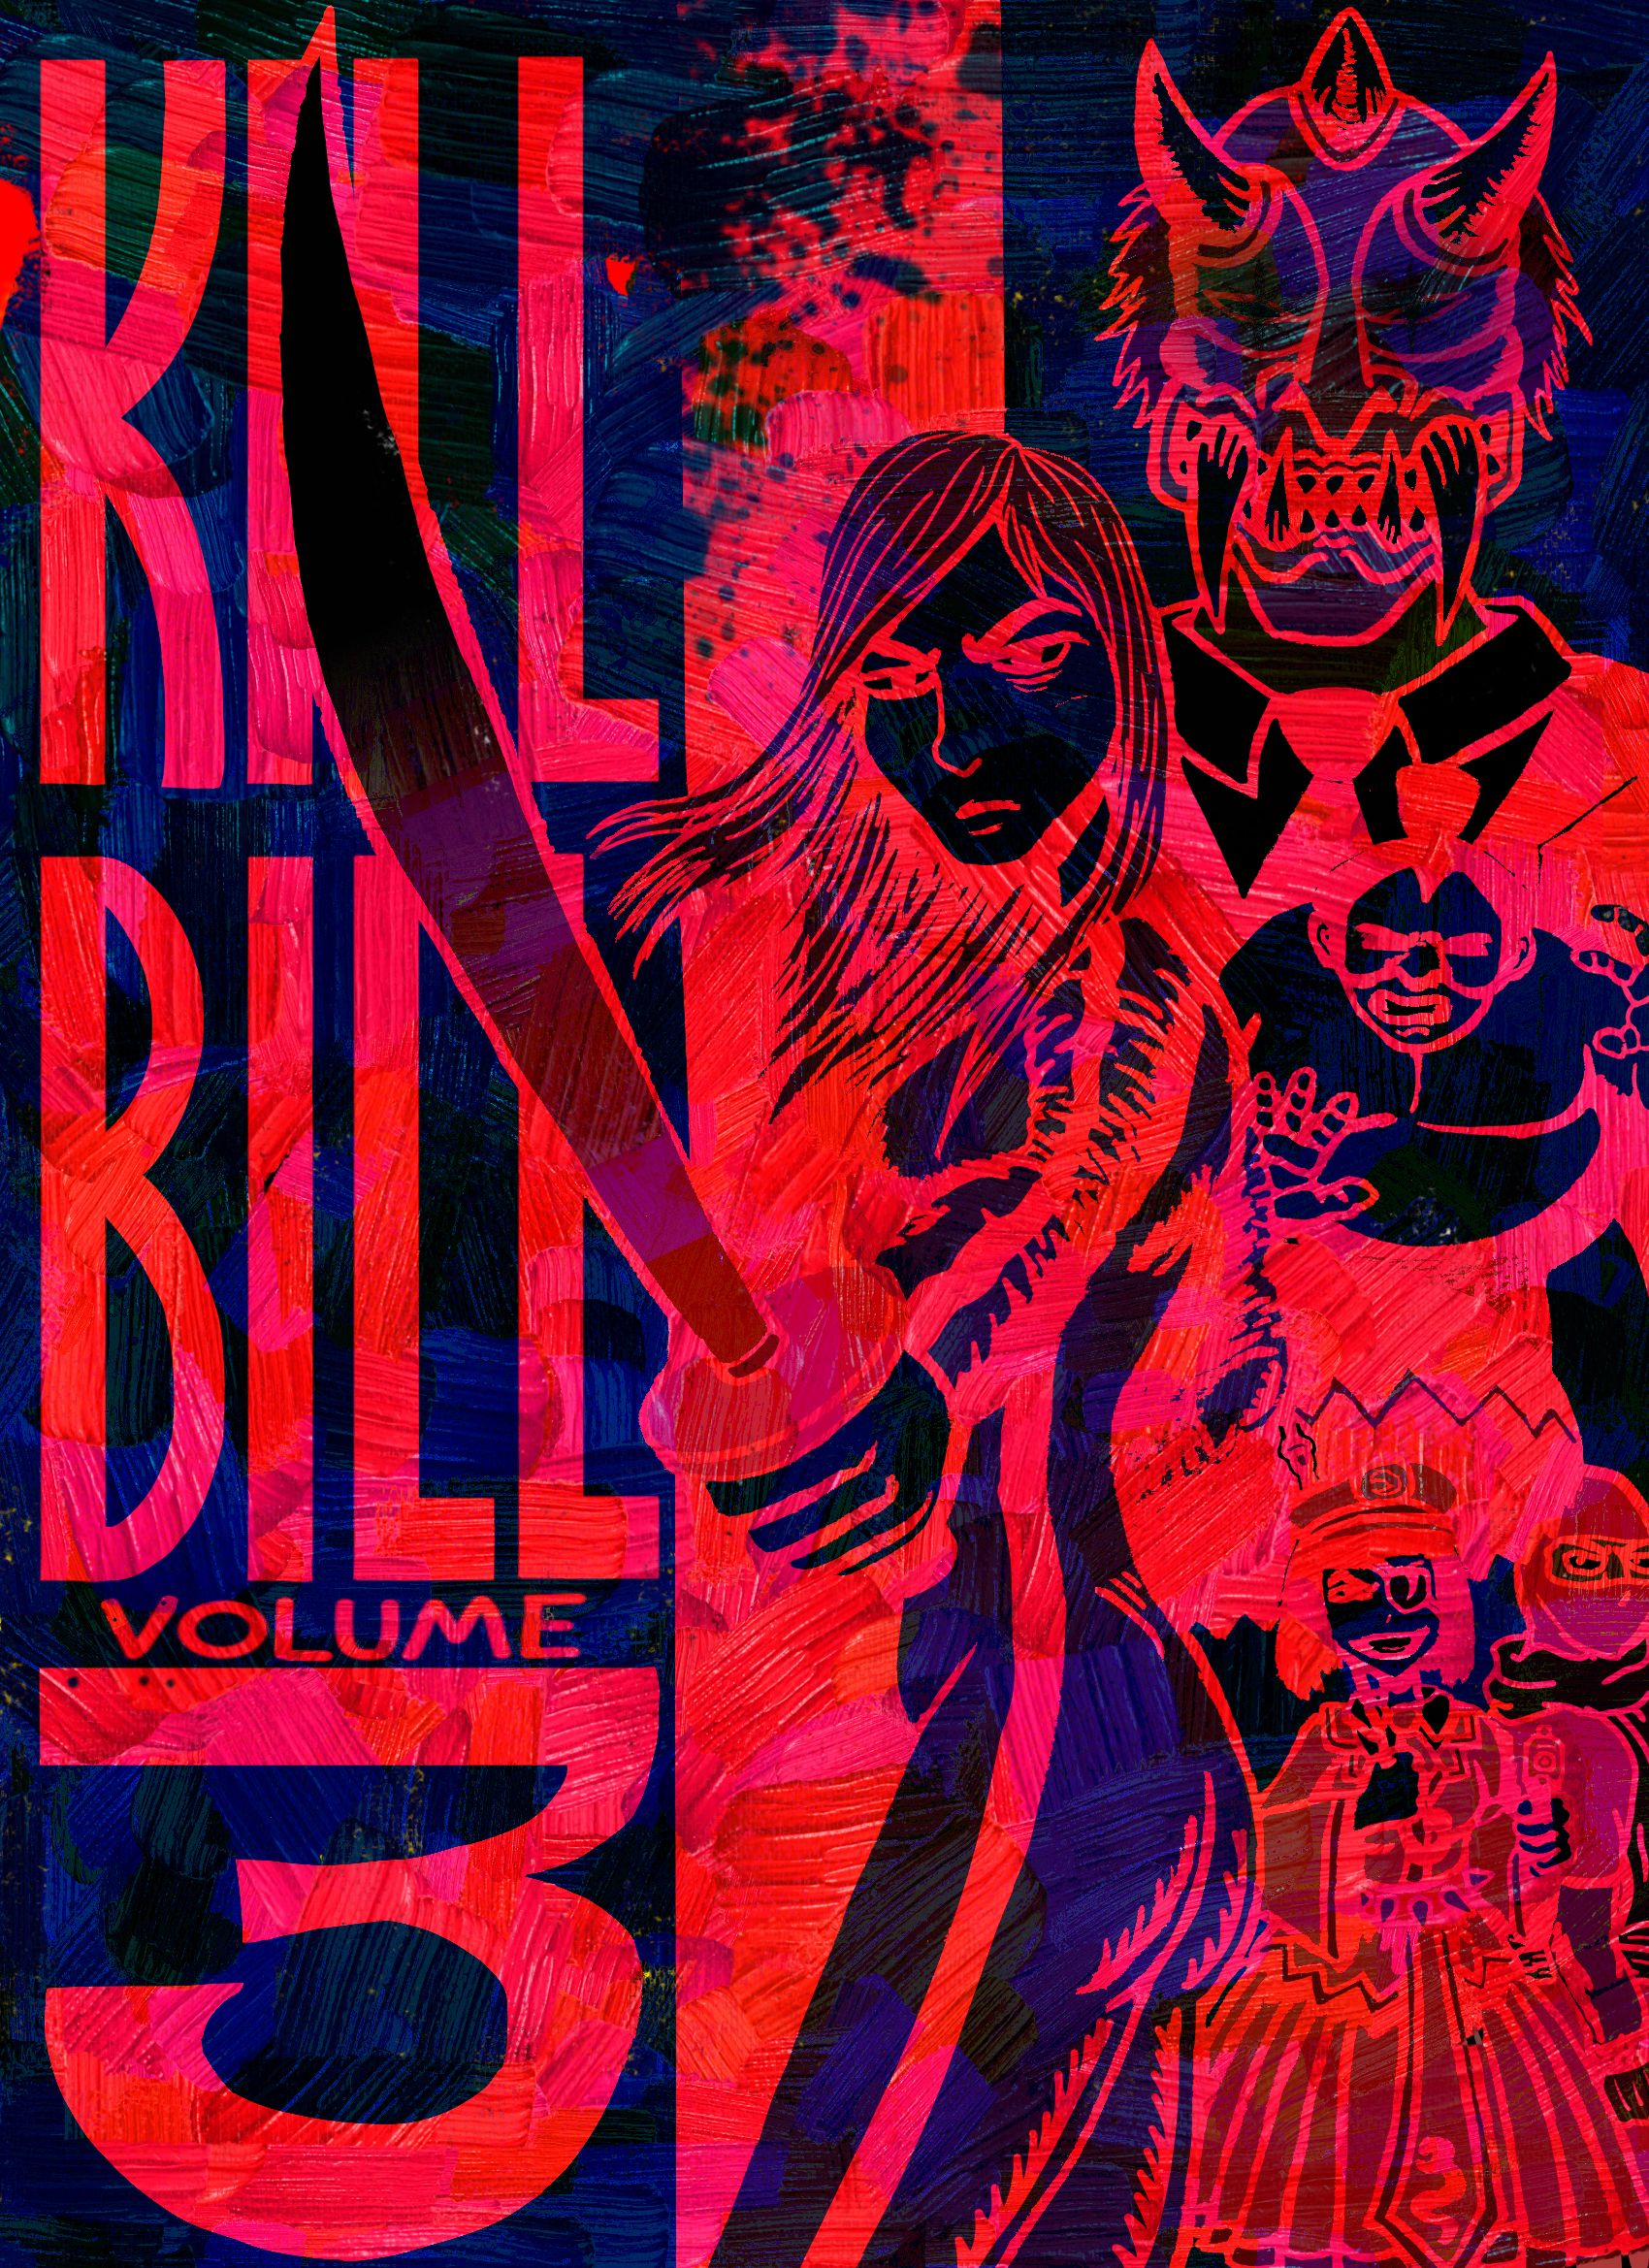 Kill Bill 3 inverted version